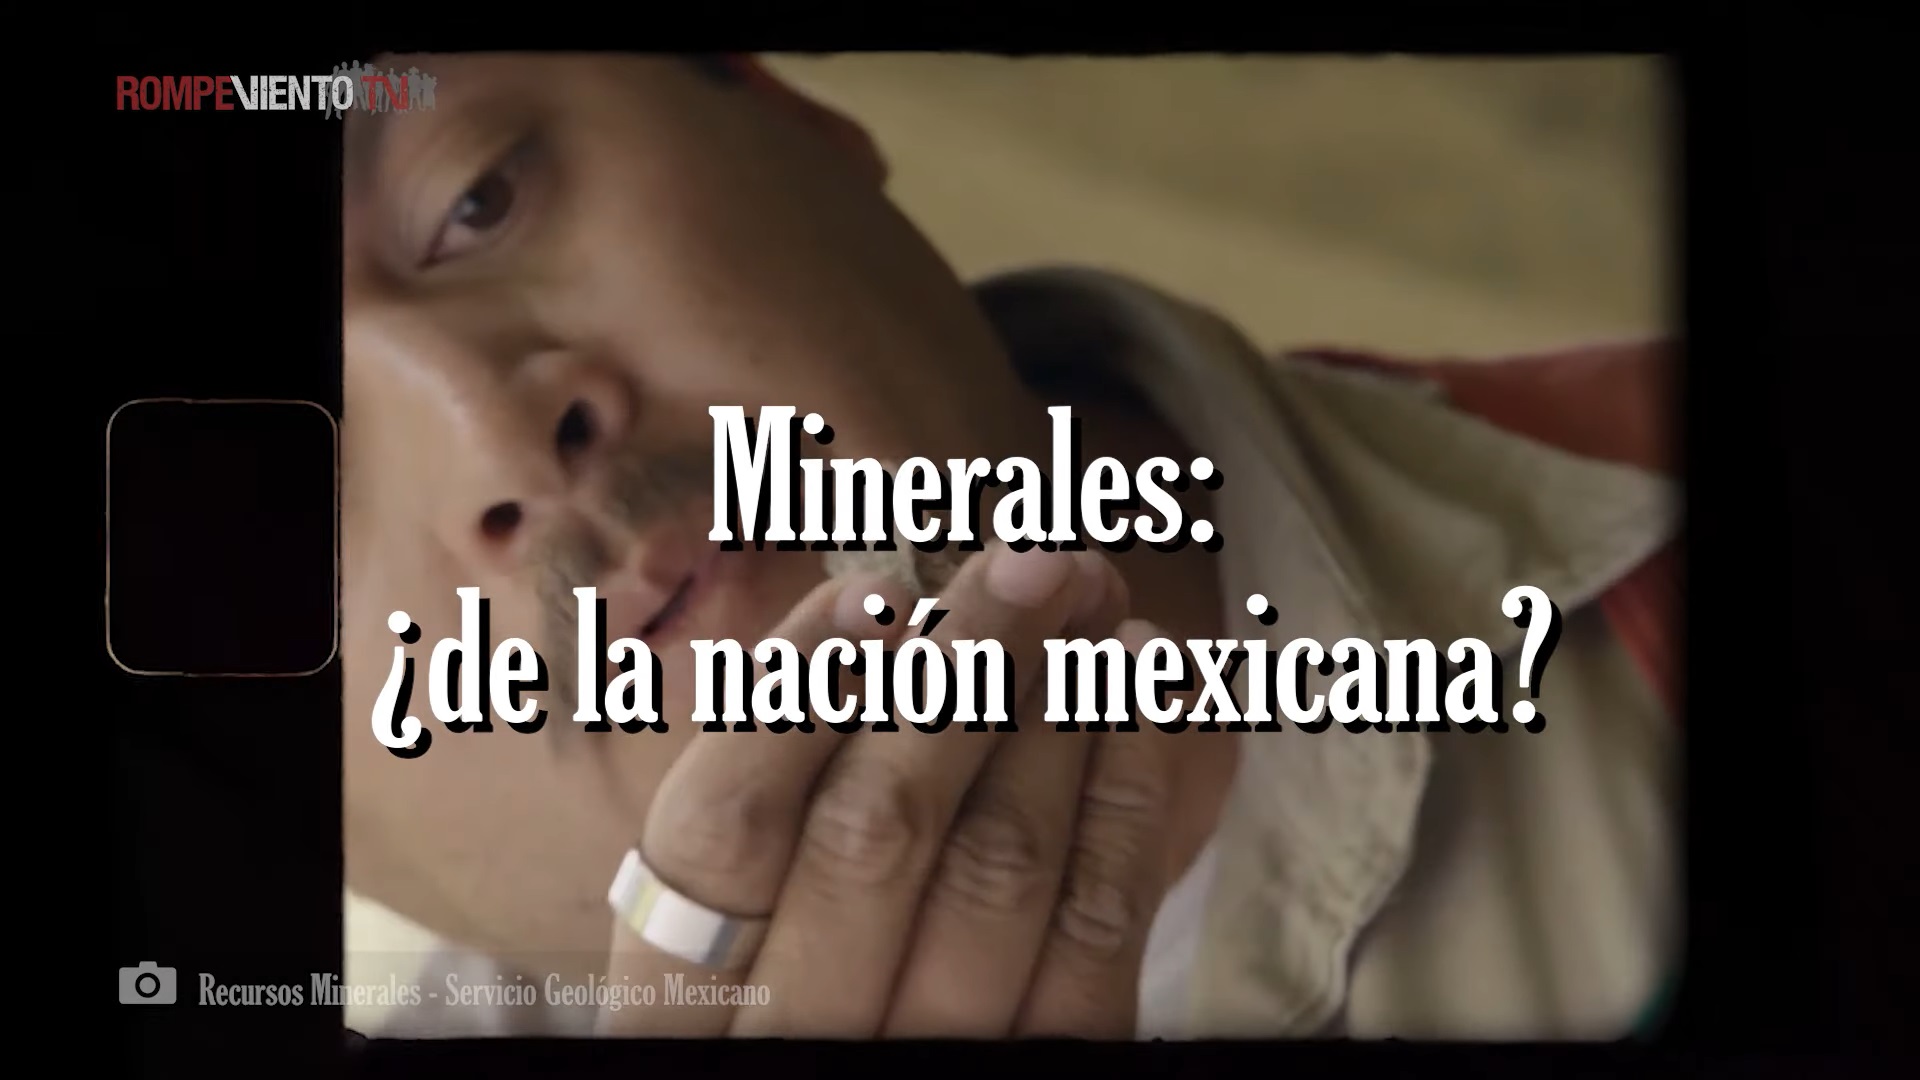 Minerales: ¿de la nación mexicana?